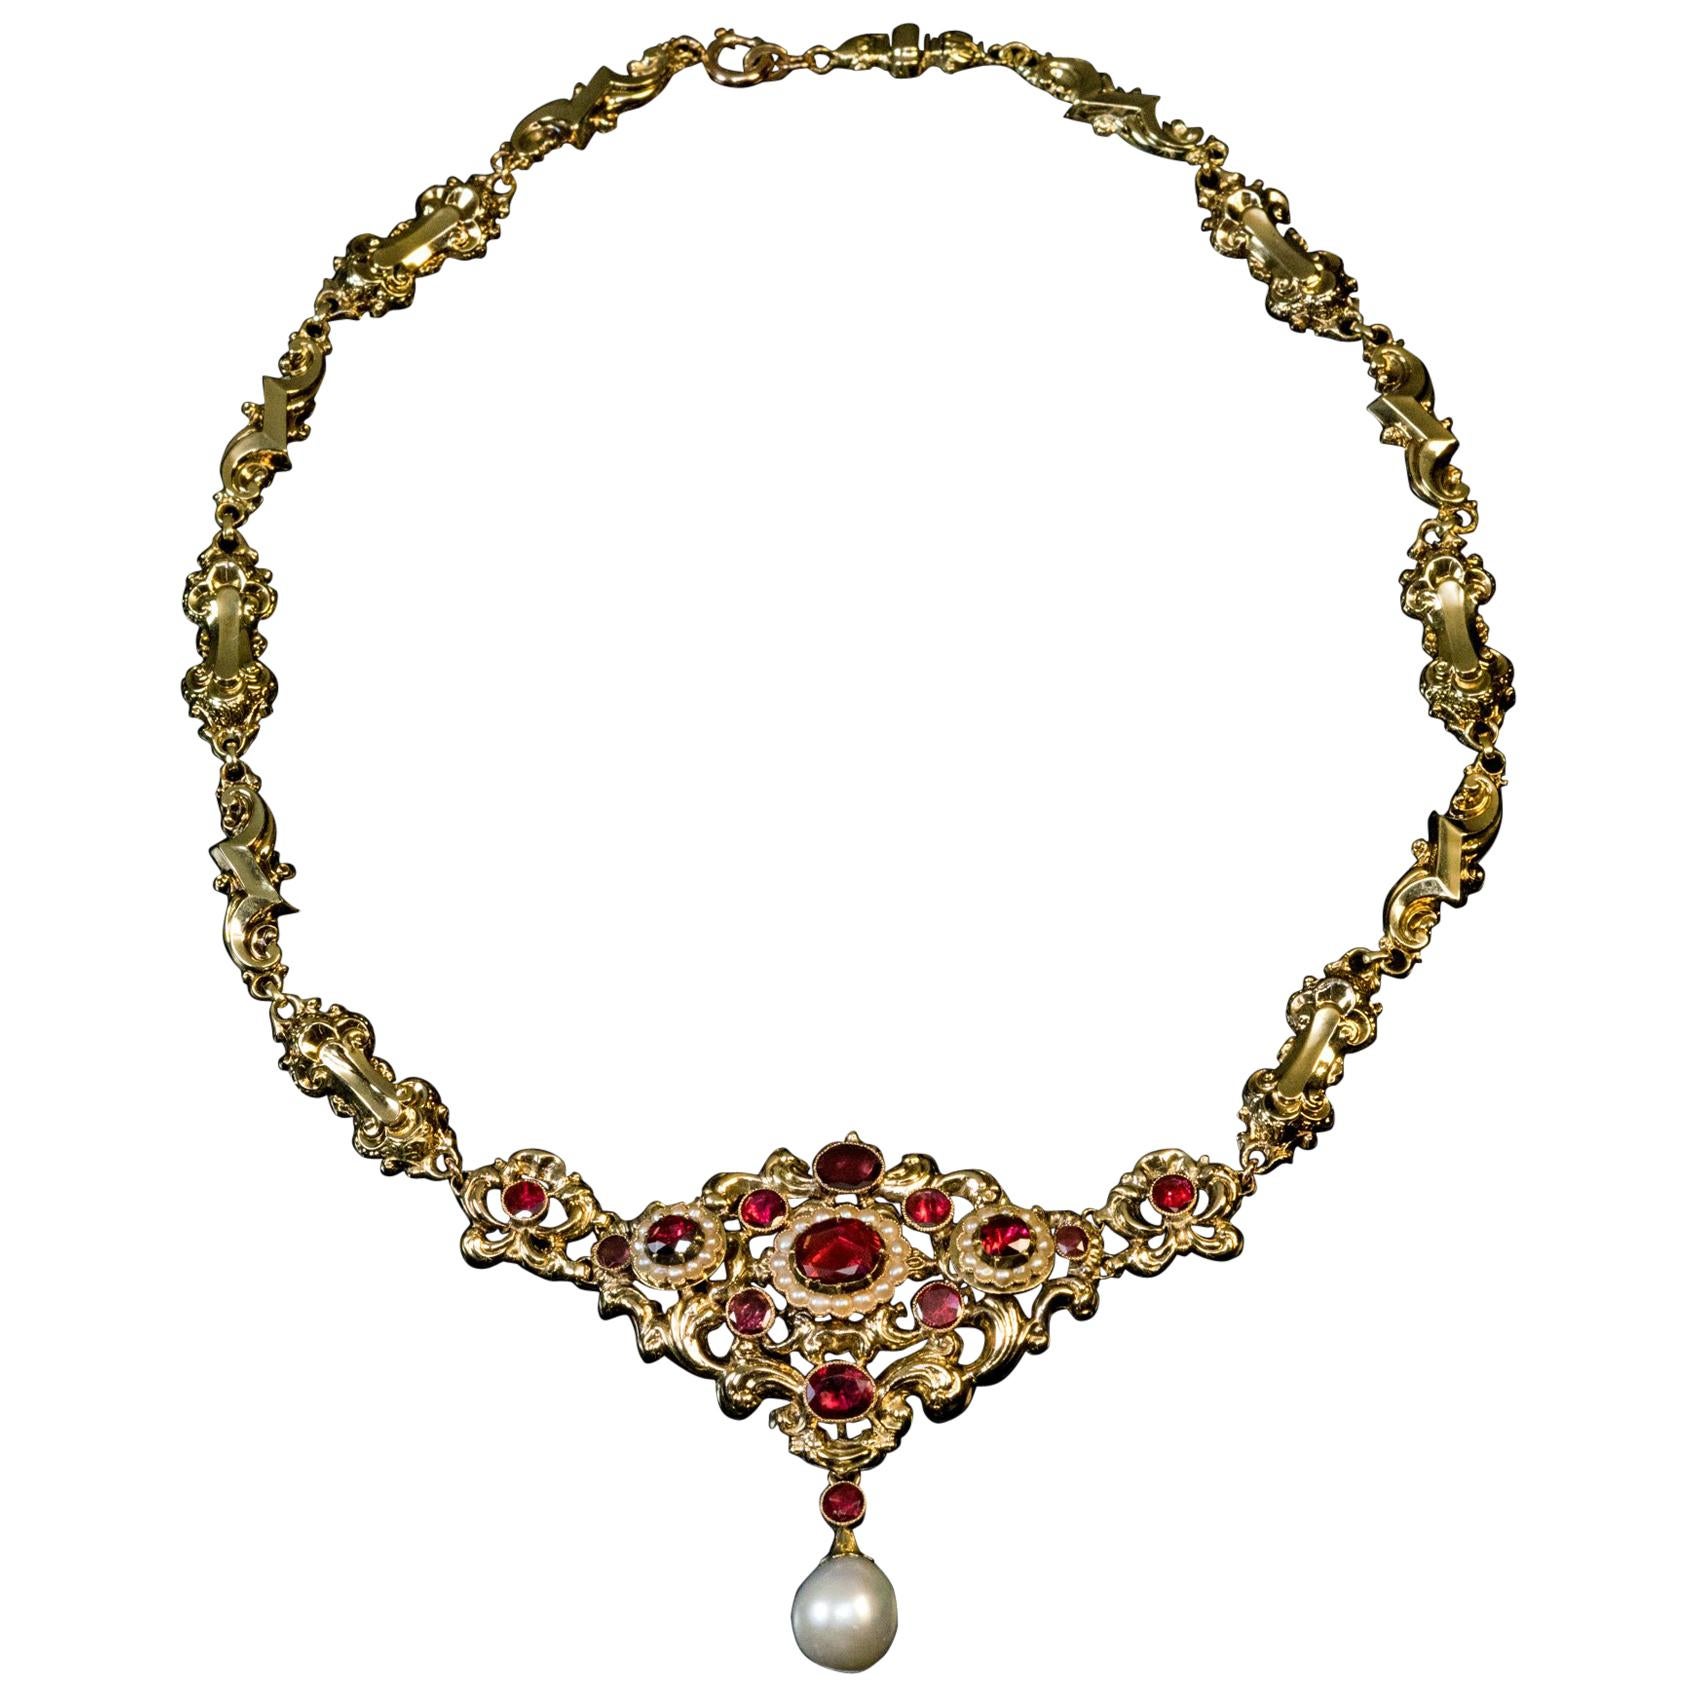 Antique Renaissance Revival Garnet Pearl Gold Necklace